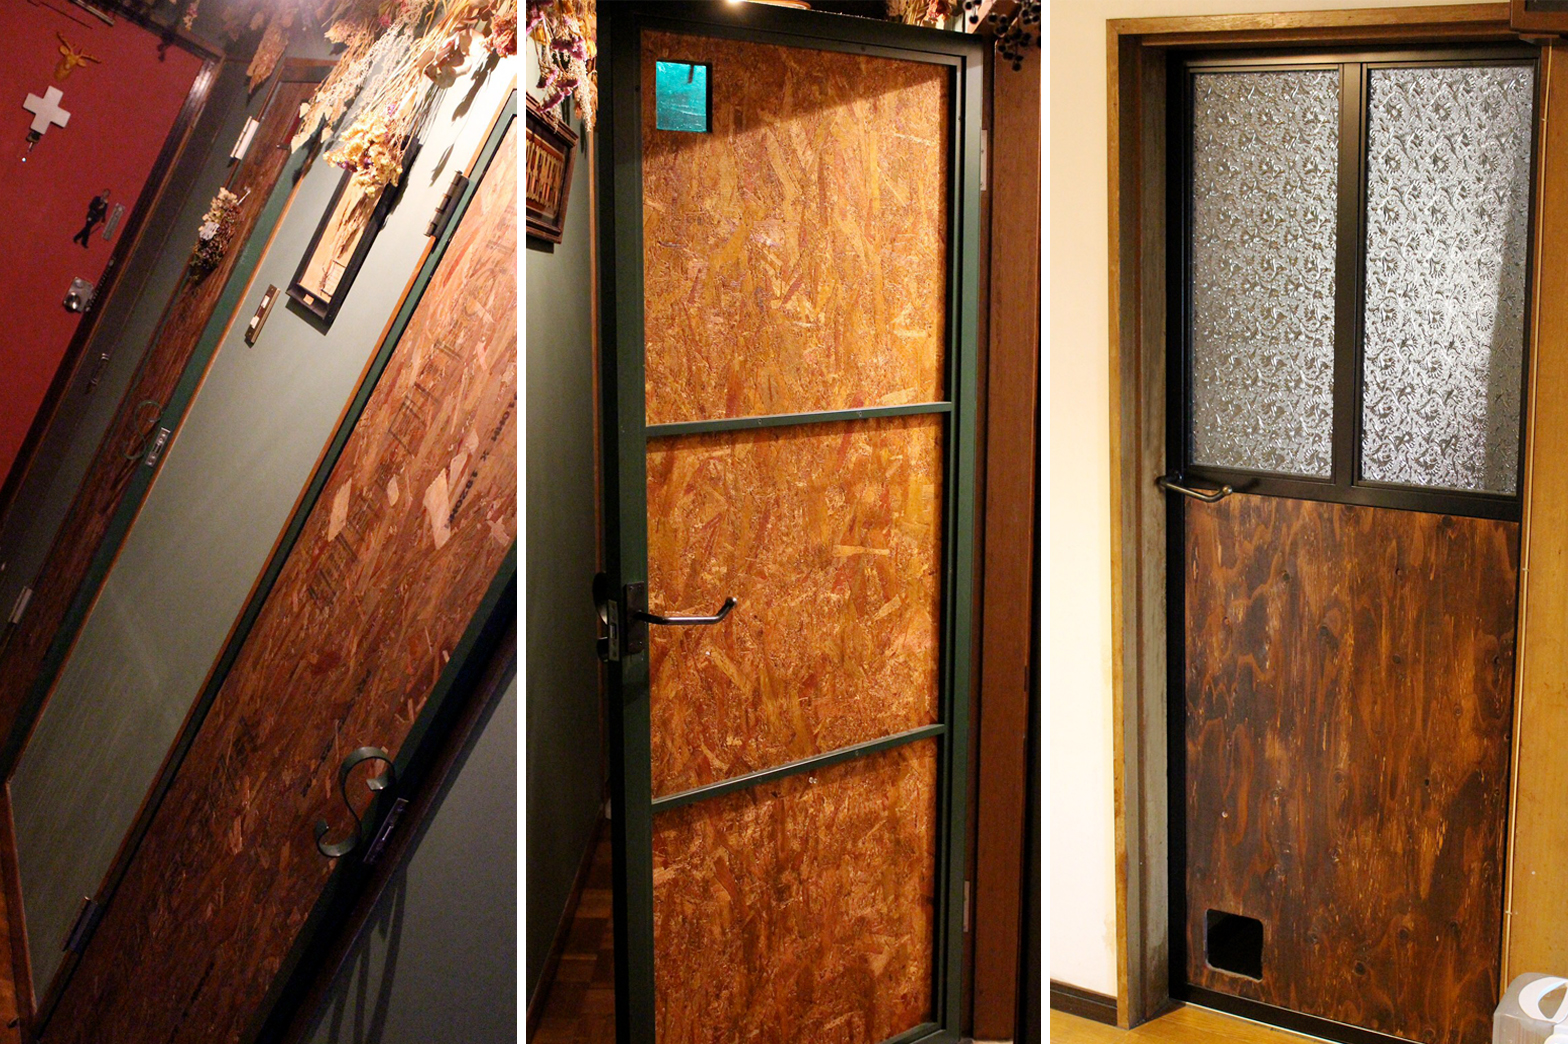 ドア -BAR風- | 建築金物・装飾金物 などの製作はナルセ金属